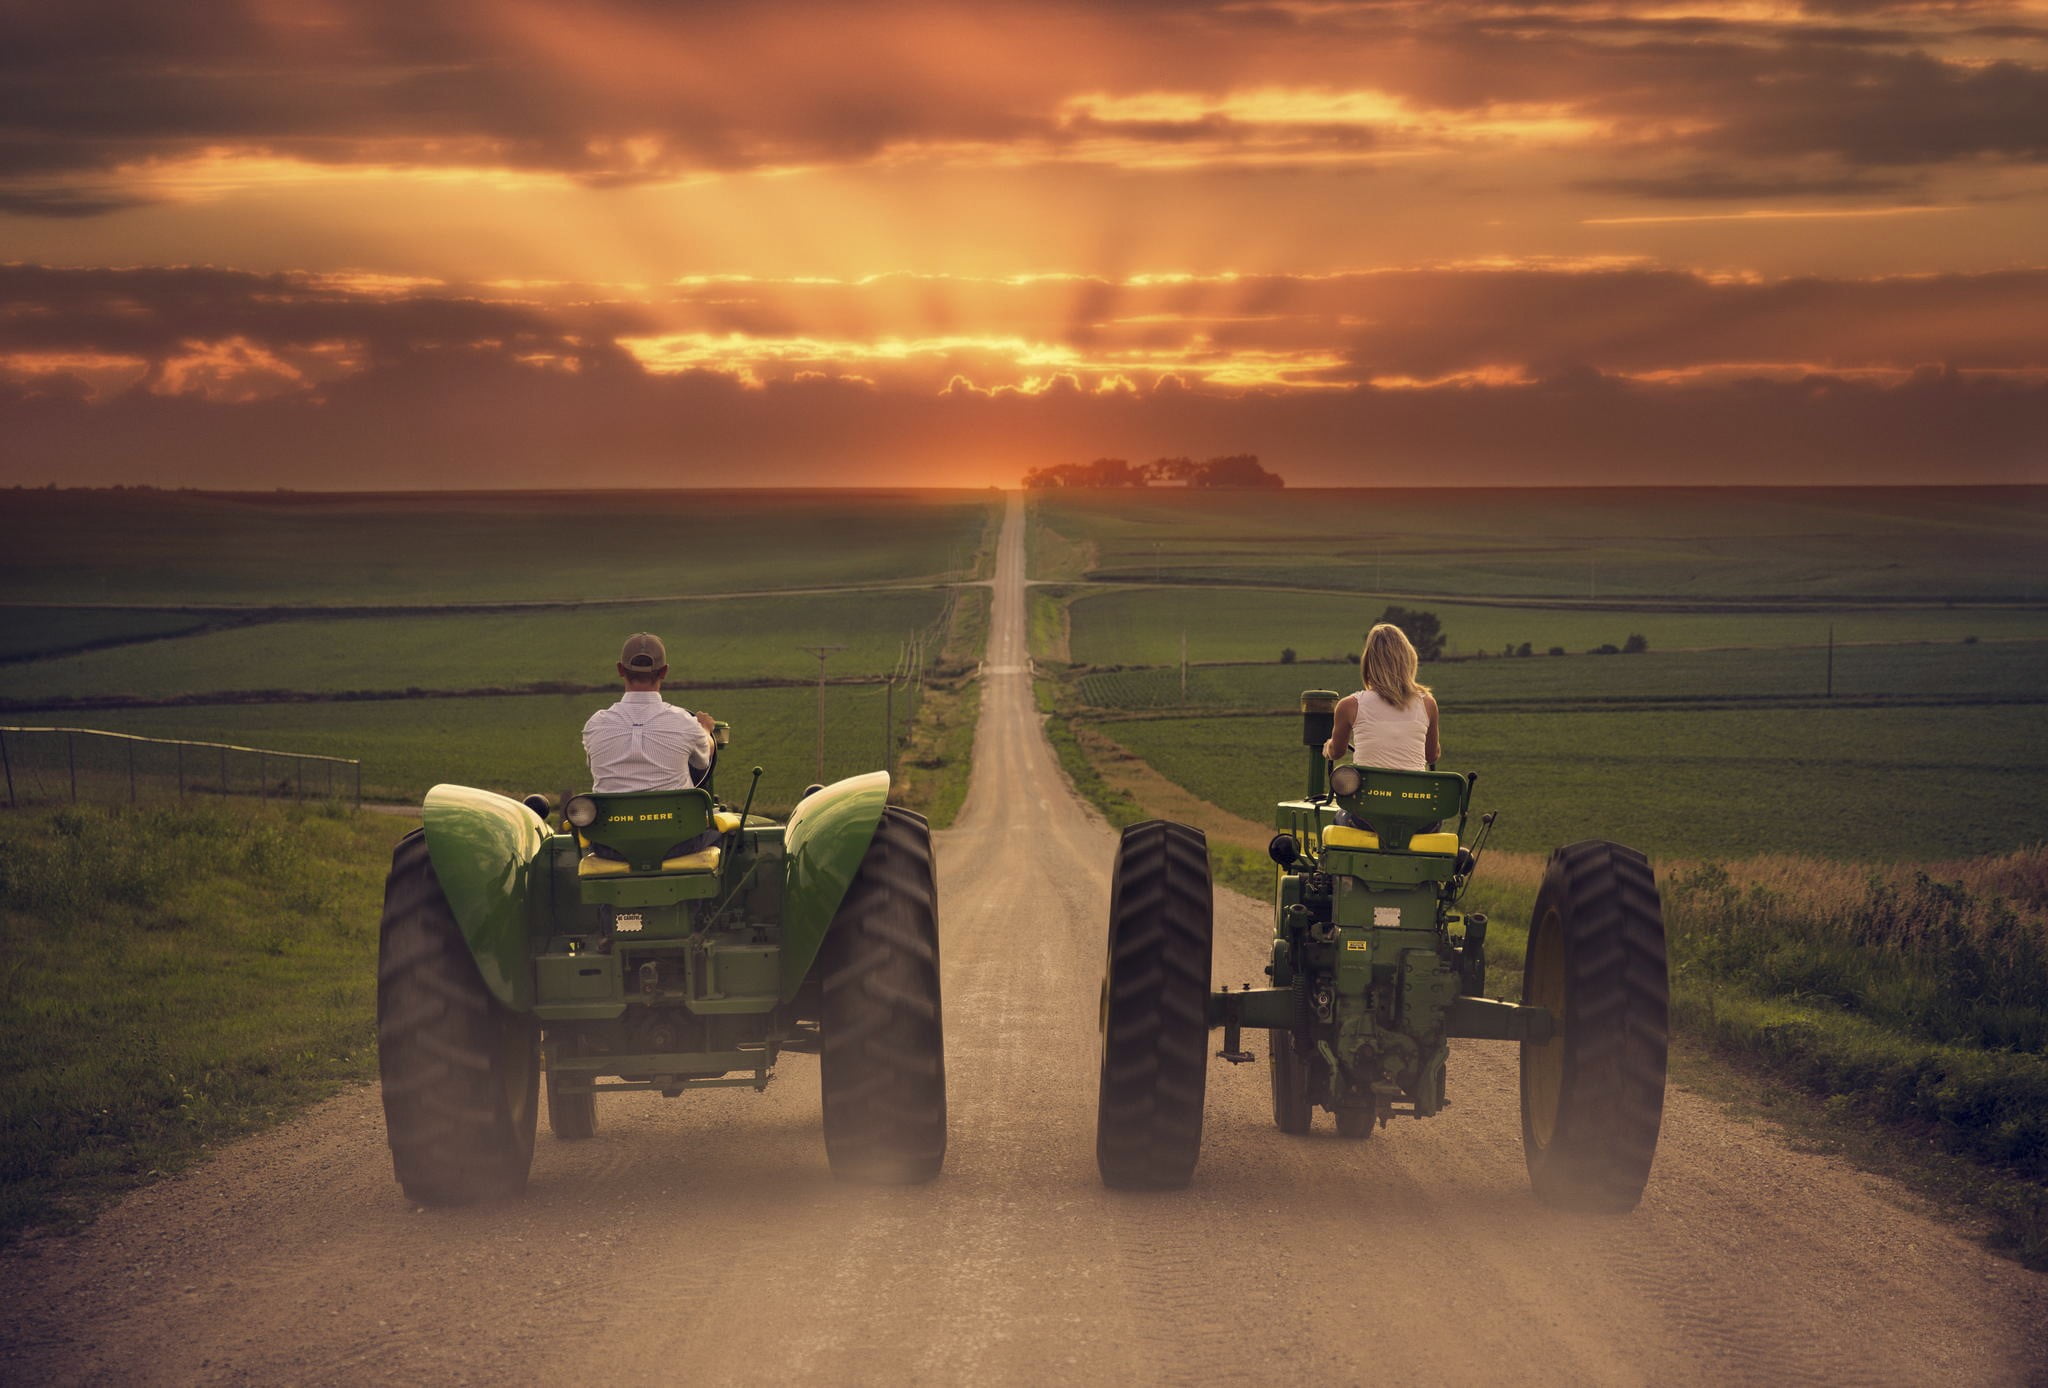 Two green John Deere tractors, landscape, field, tractors, vehicle HD  wallpaper | Wallpaper Flare